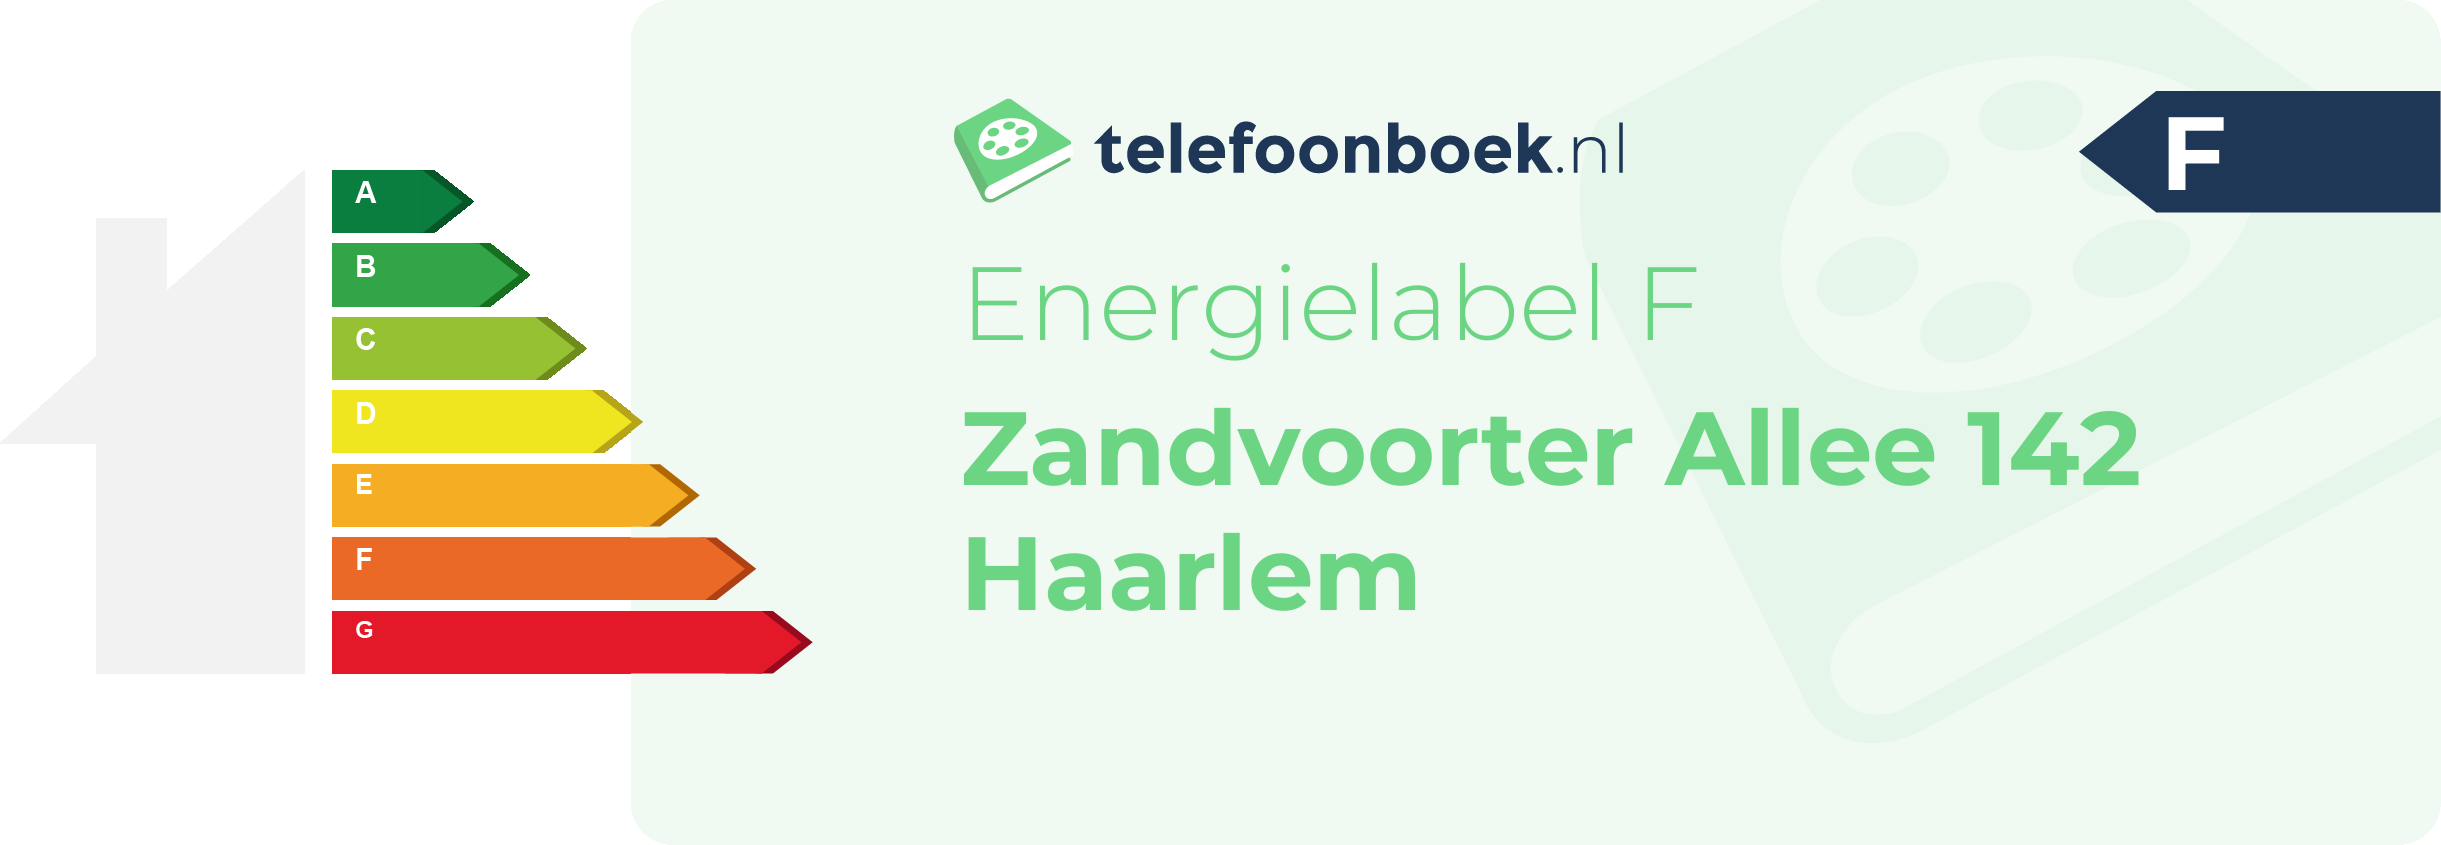 Energielabel Zandvoorter Allee 142 Haarlem